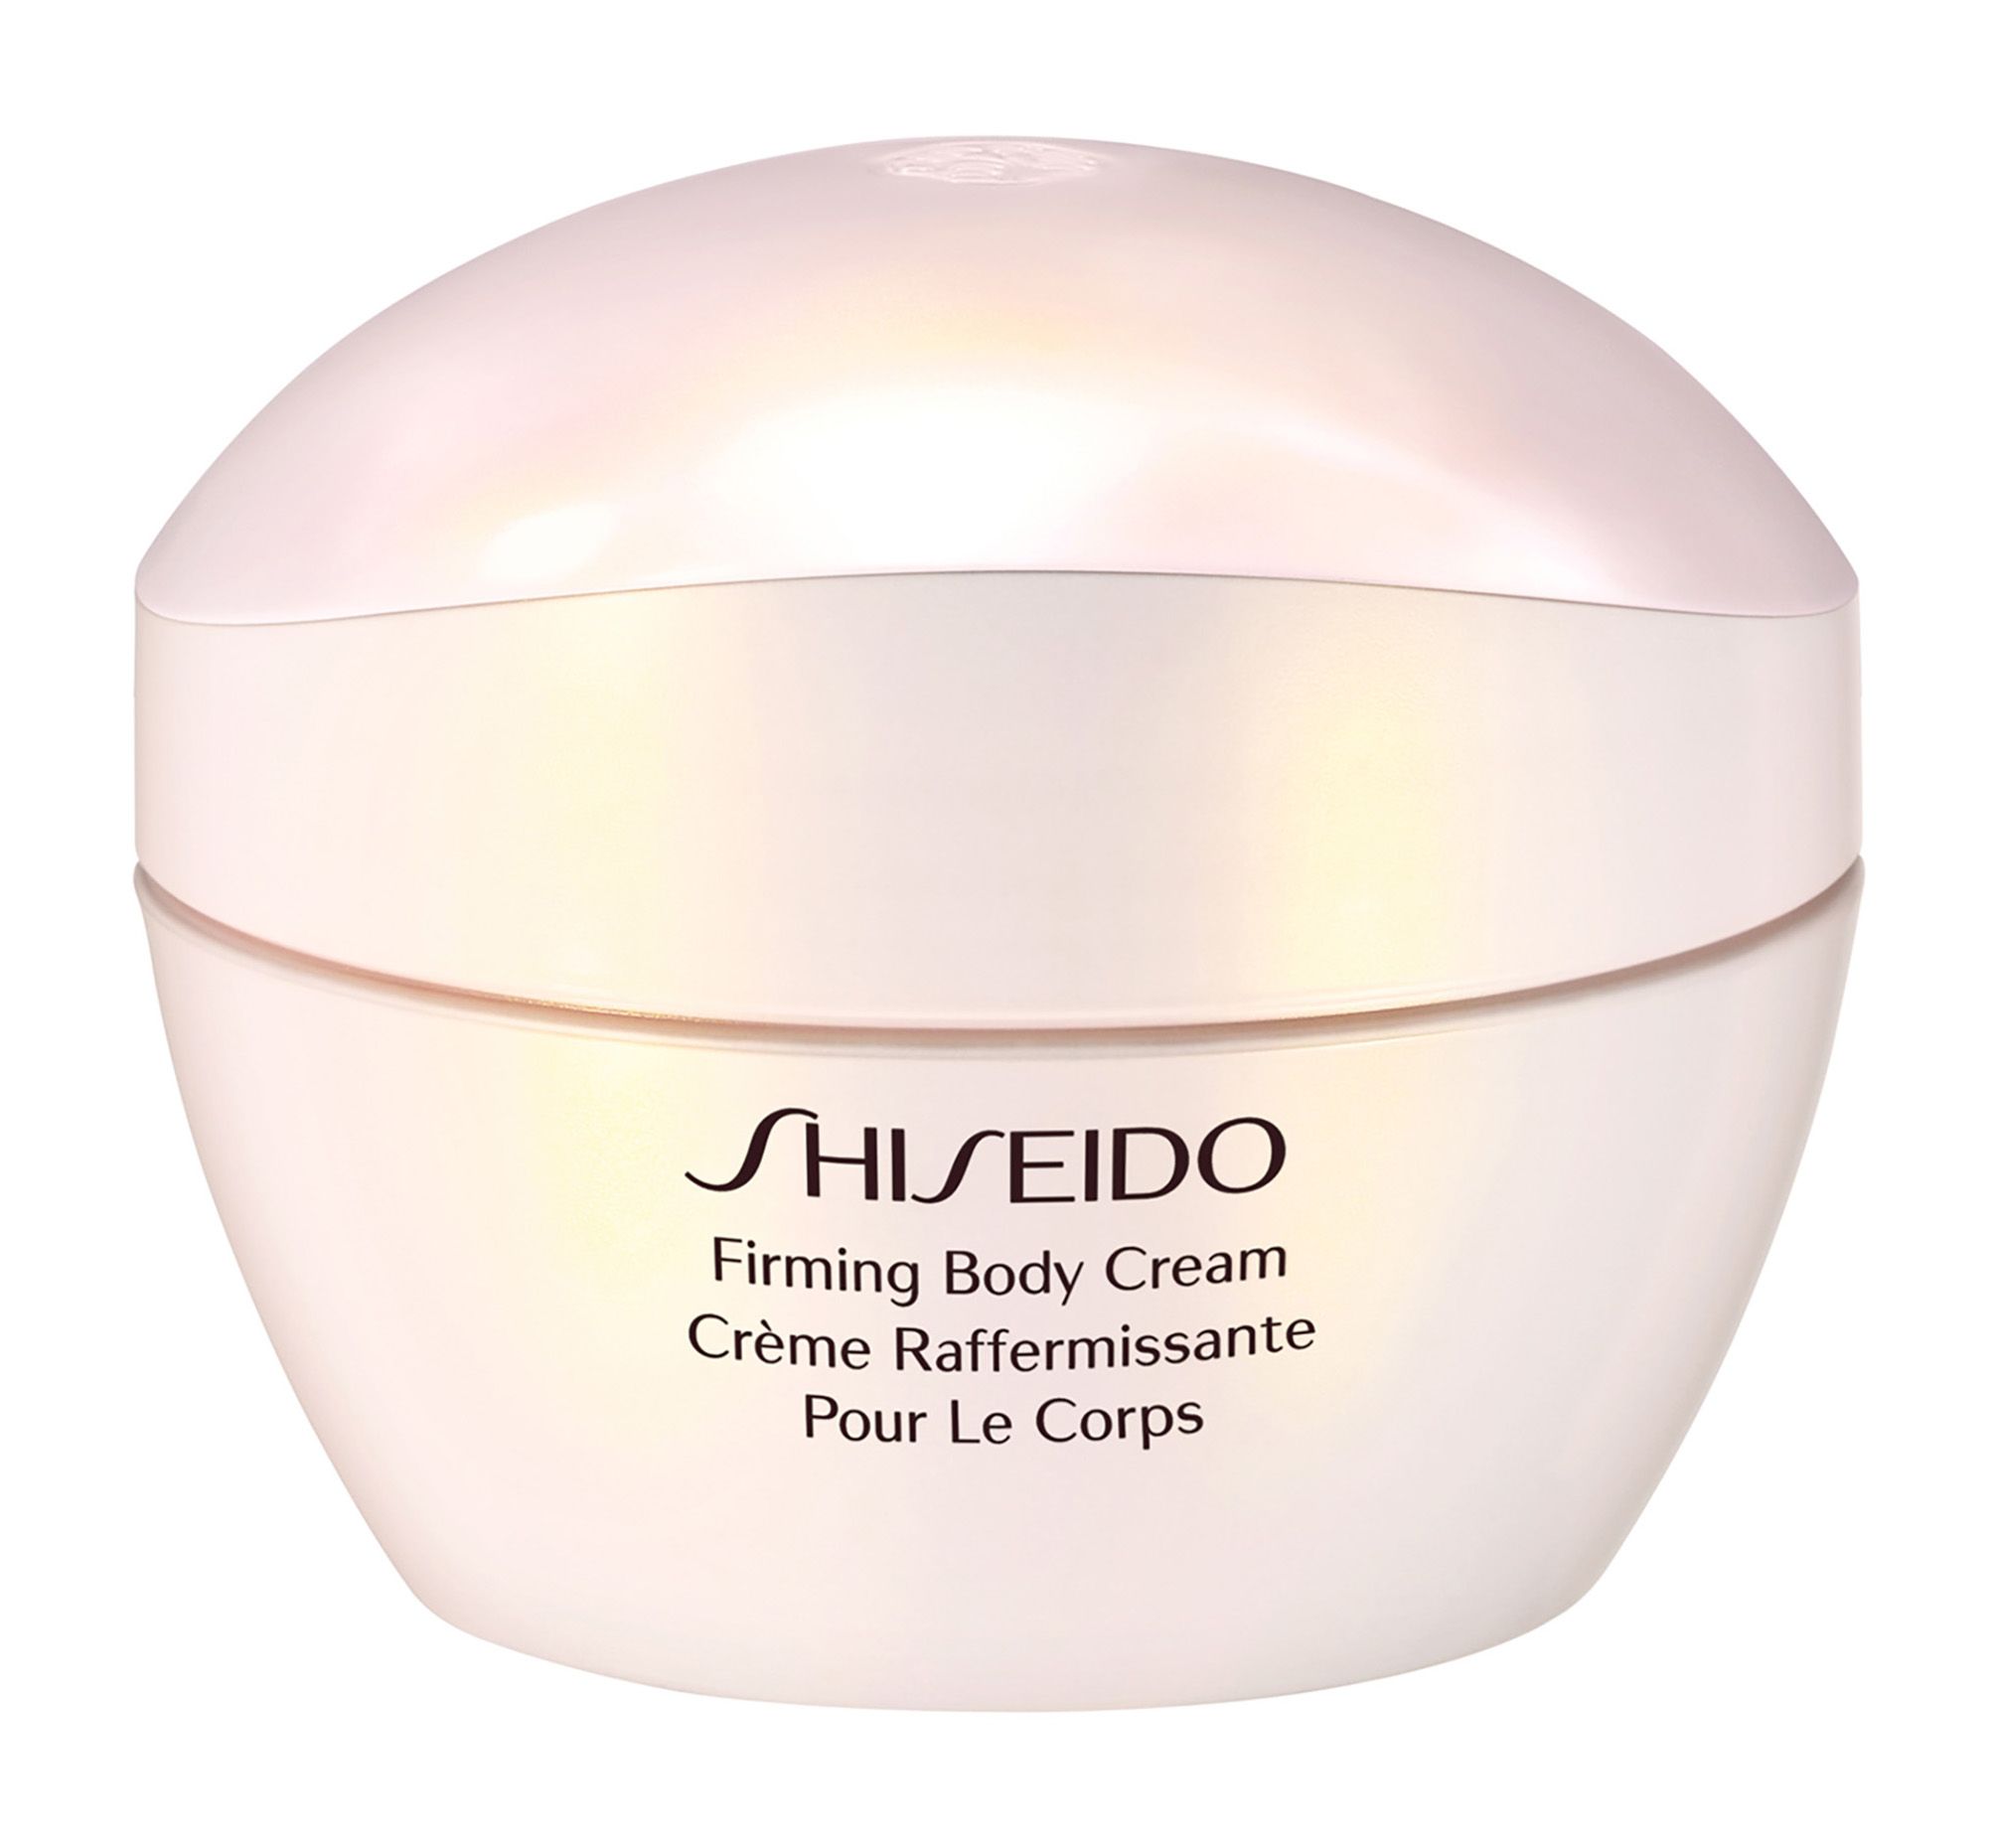 Крем shiseido купить. Шисейдо крем для тела. Шисейдо питательный крем. Шисейдо крем для лица. Shiseido крем для тела, повышающий упругость кожи.